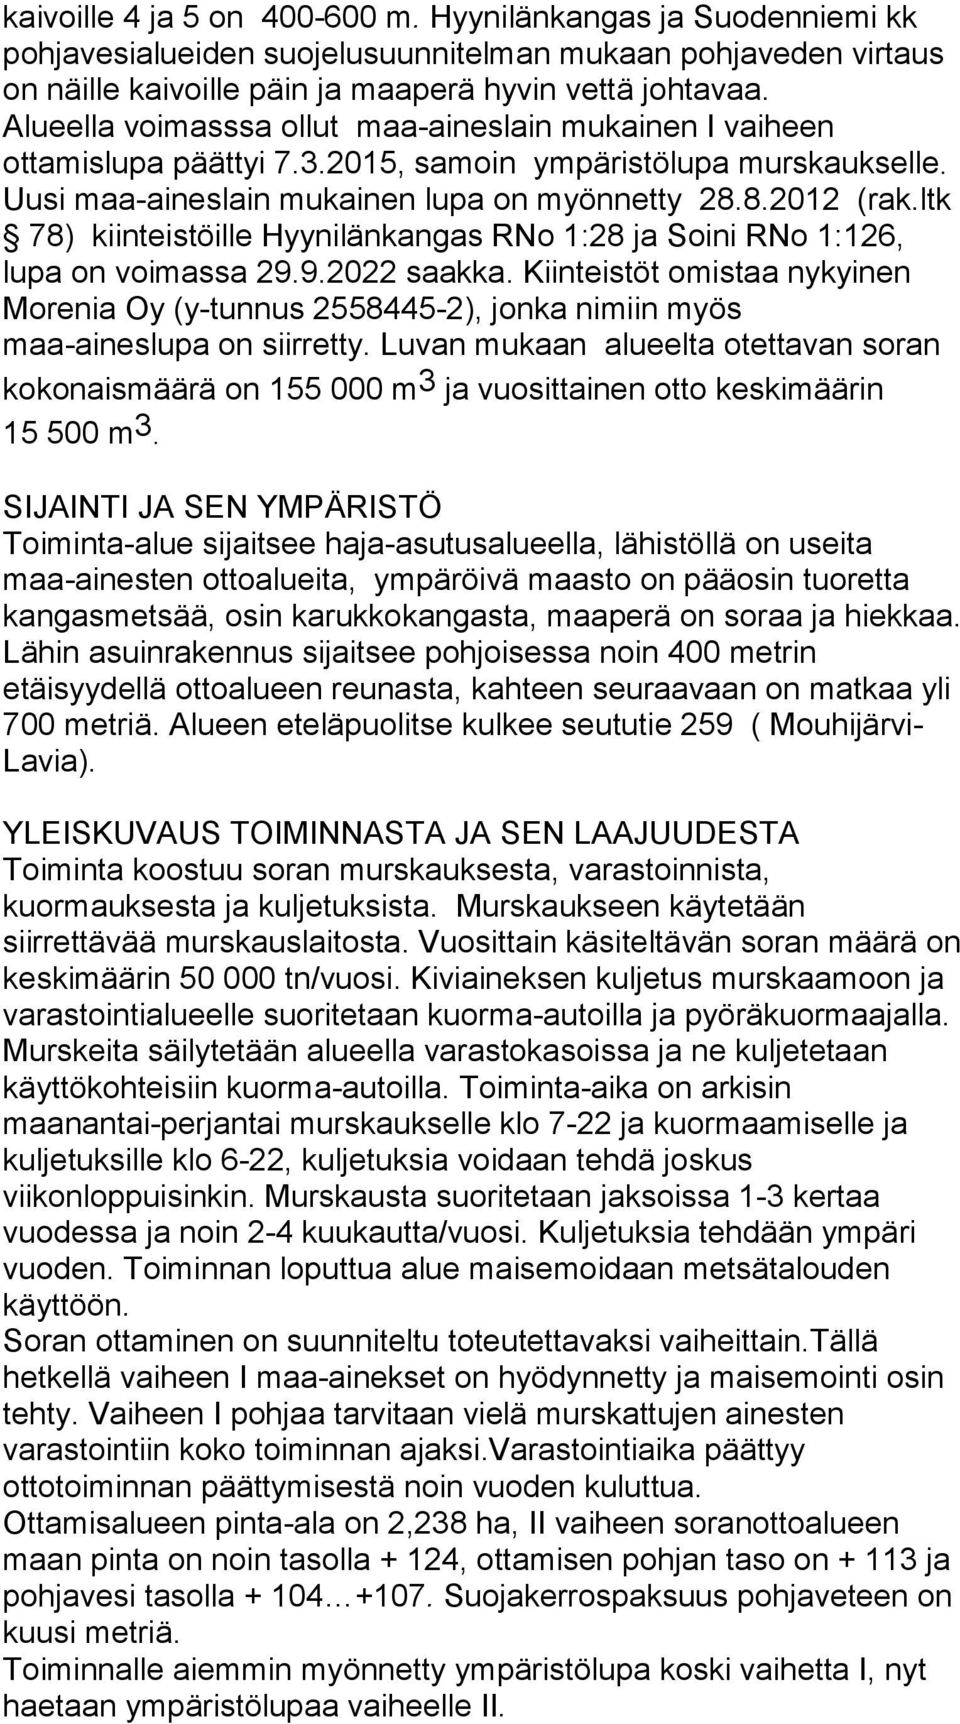 ltk 78) kiinteistöille Hyynilänkangas RNo 1:28 ja Soini RNo 1:126, lupa on voimassa 29.9.2022 saakka.